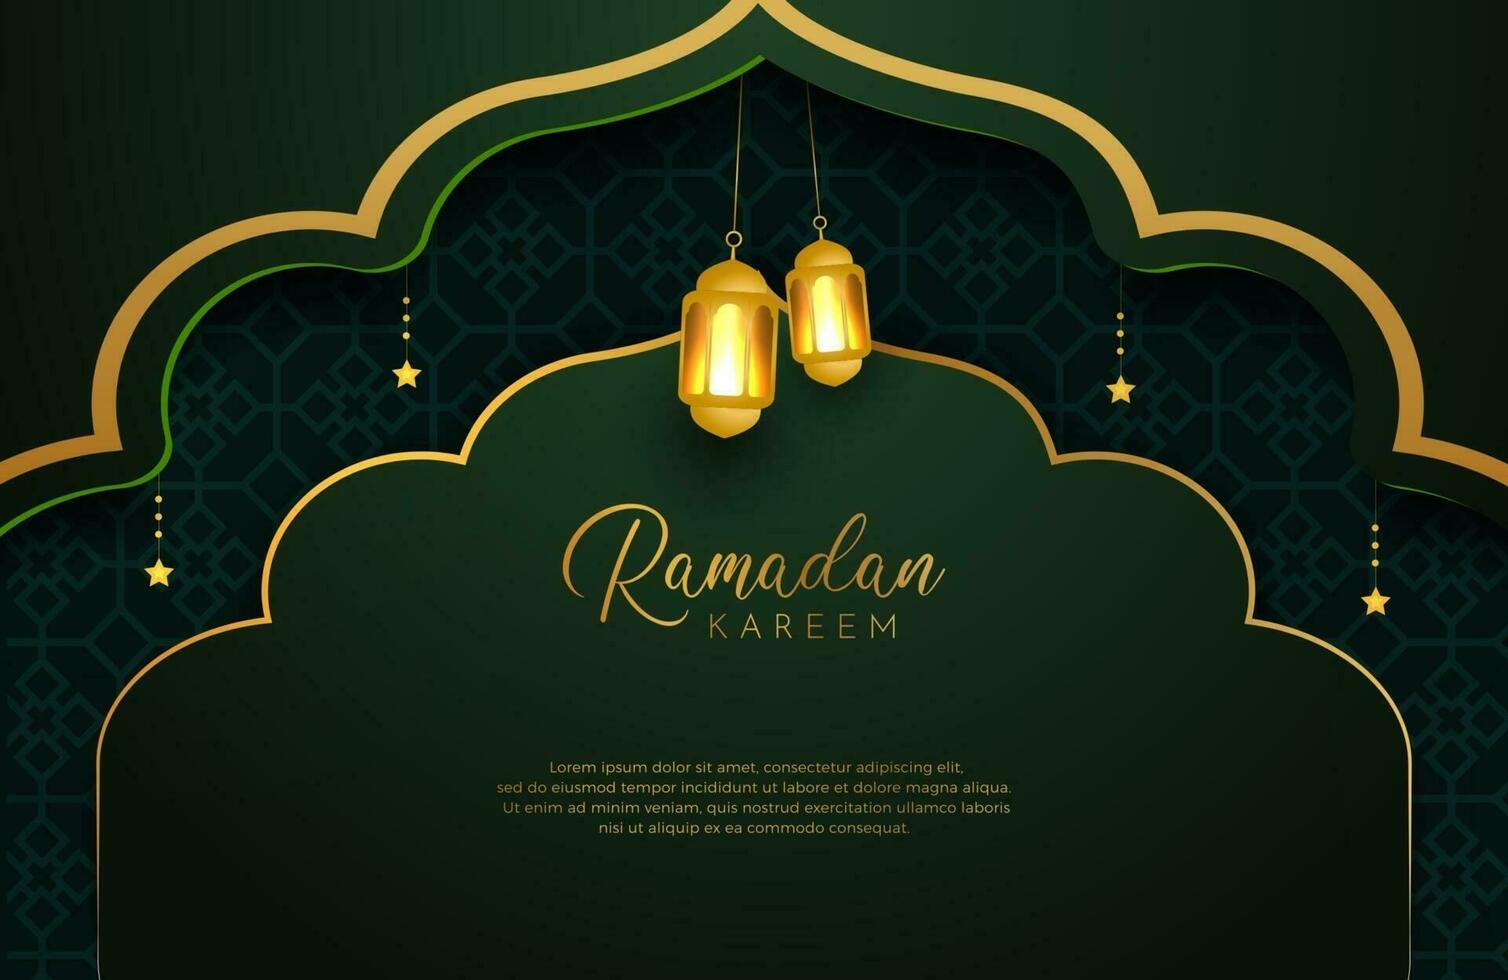 fond de ramadan kareem avec illustration vectorielle de style luxe couleur or et vert pour les célébrations du mois sacré islamique décorées d'étoiles et de lanternes vecteur